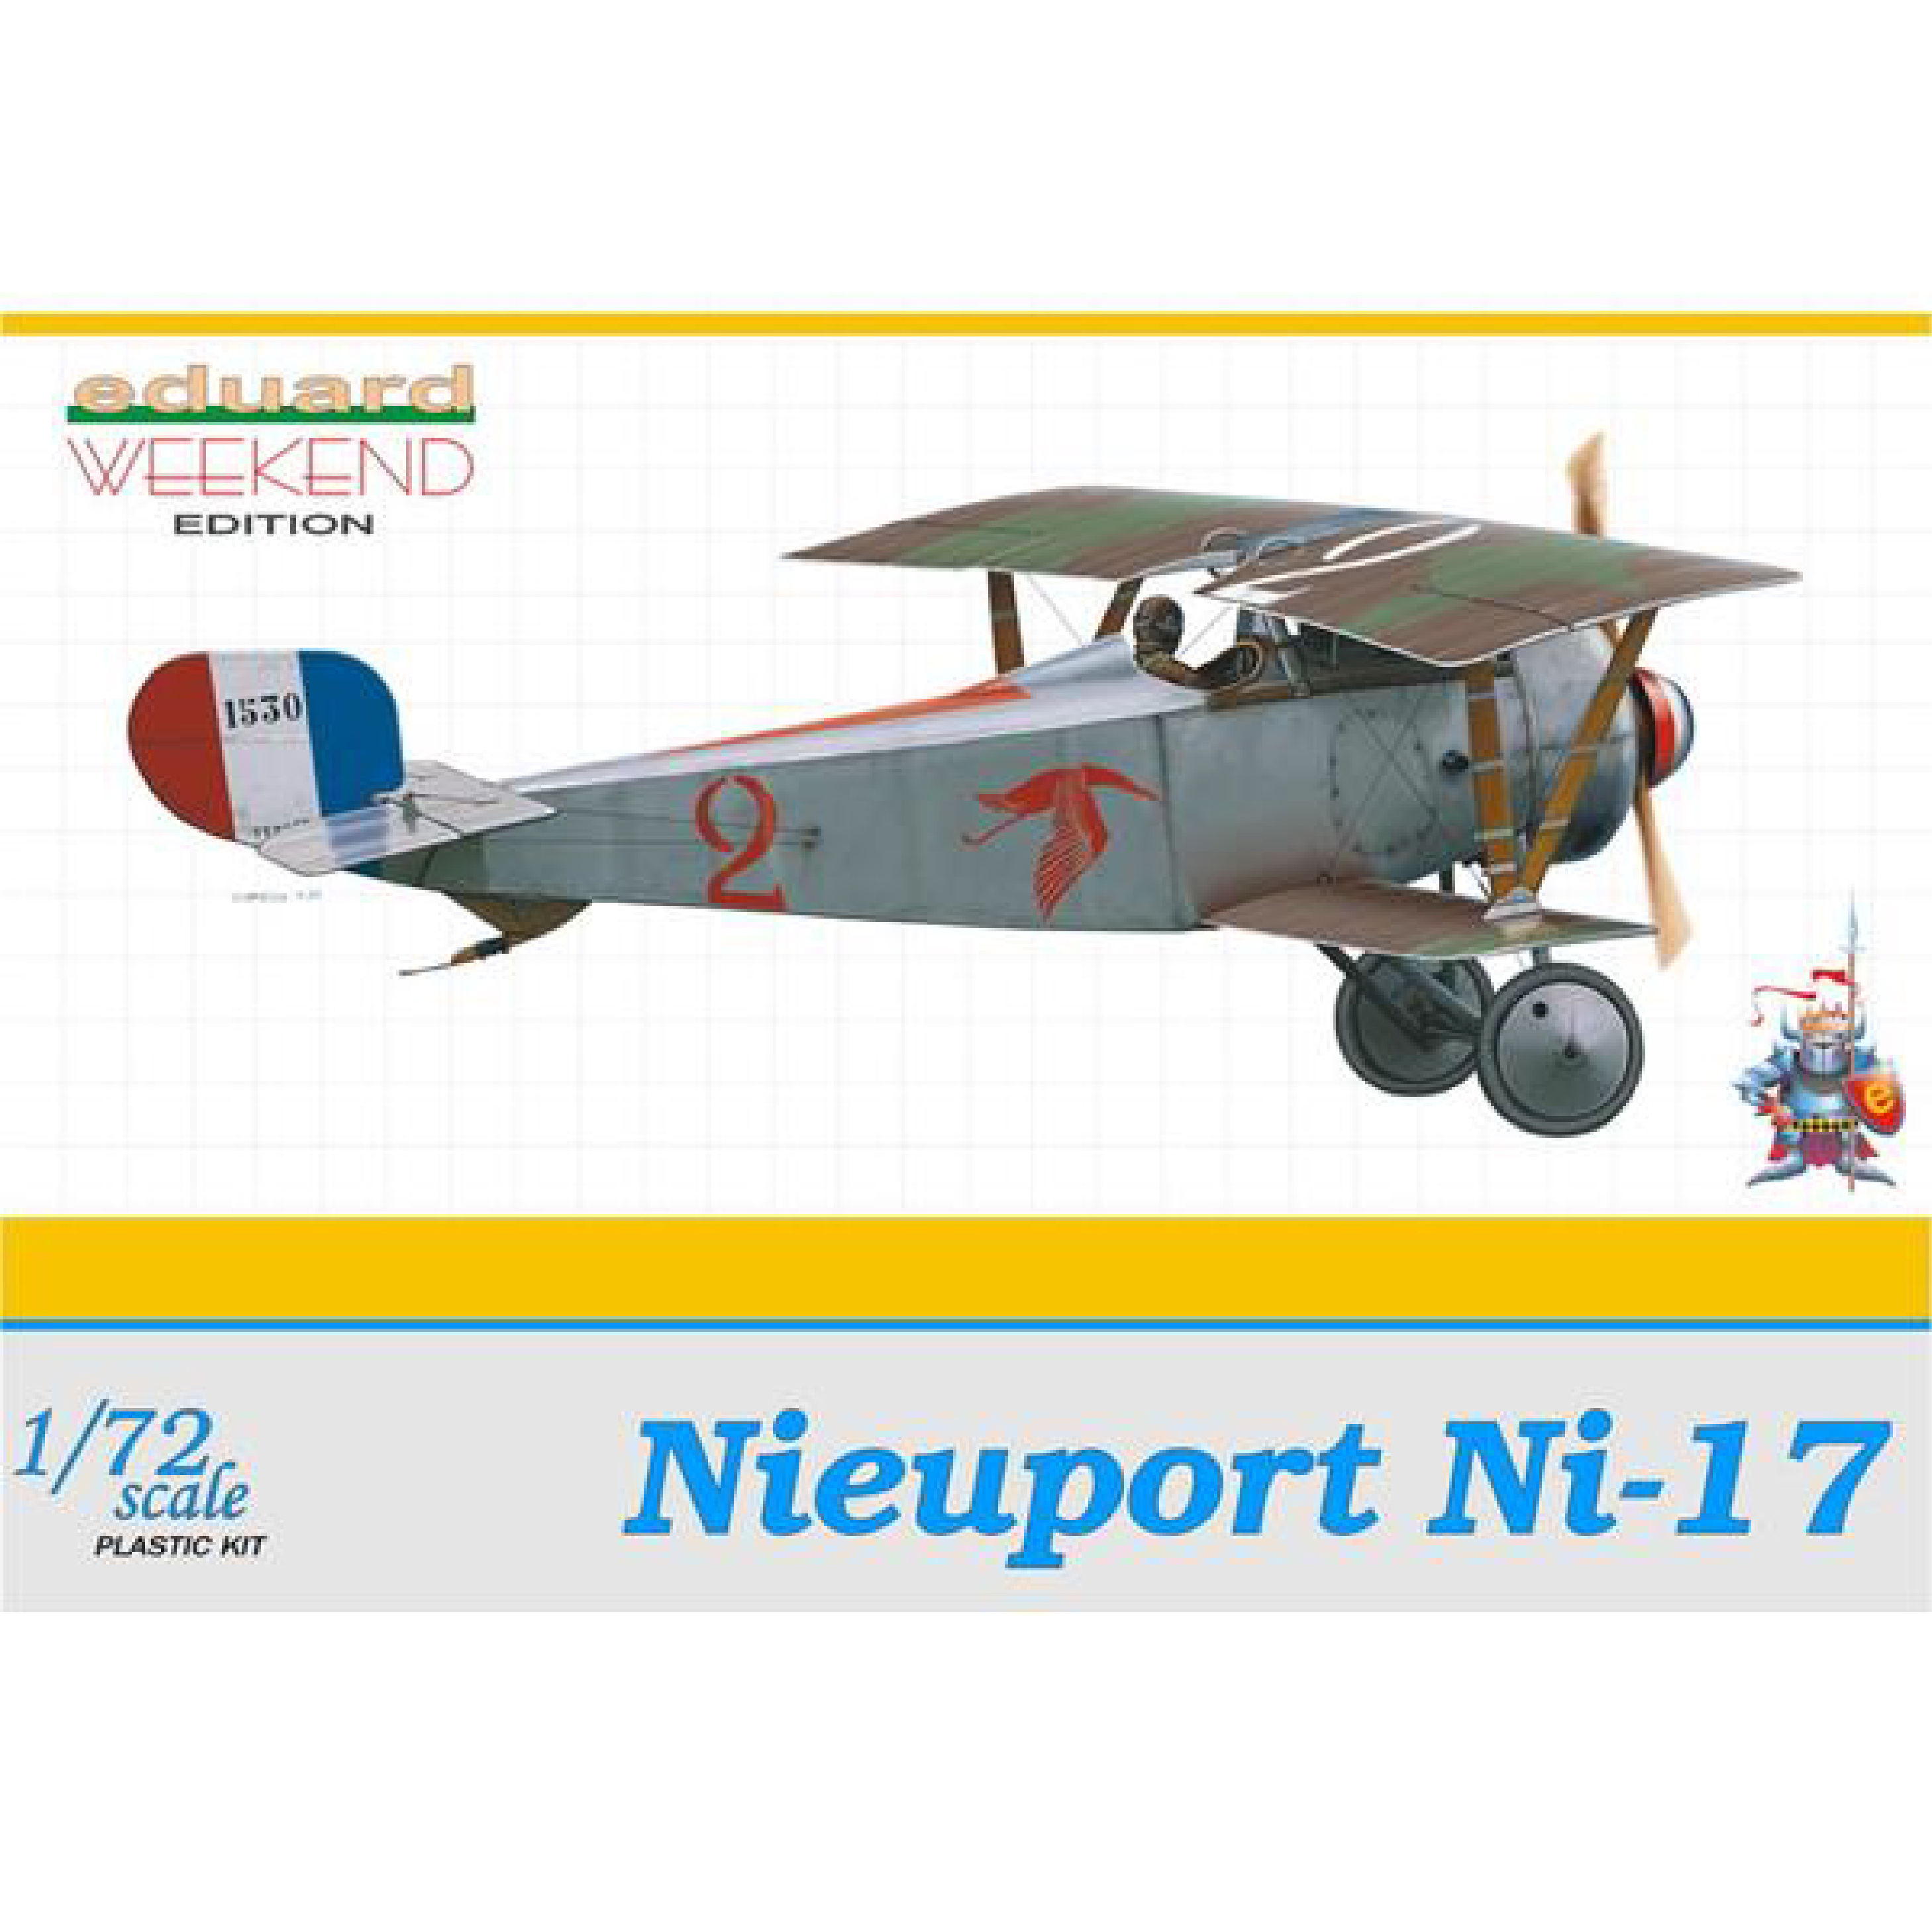 EDUARD 1/72 MAKET Nieuport Ni-17